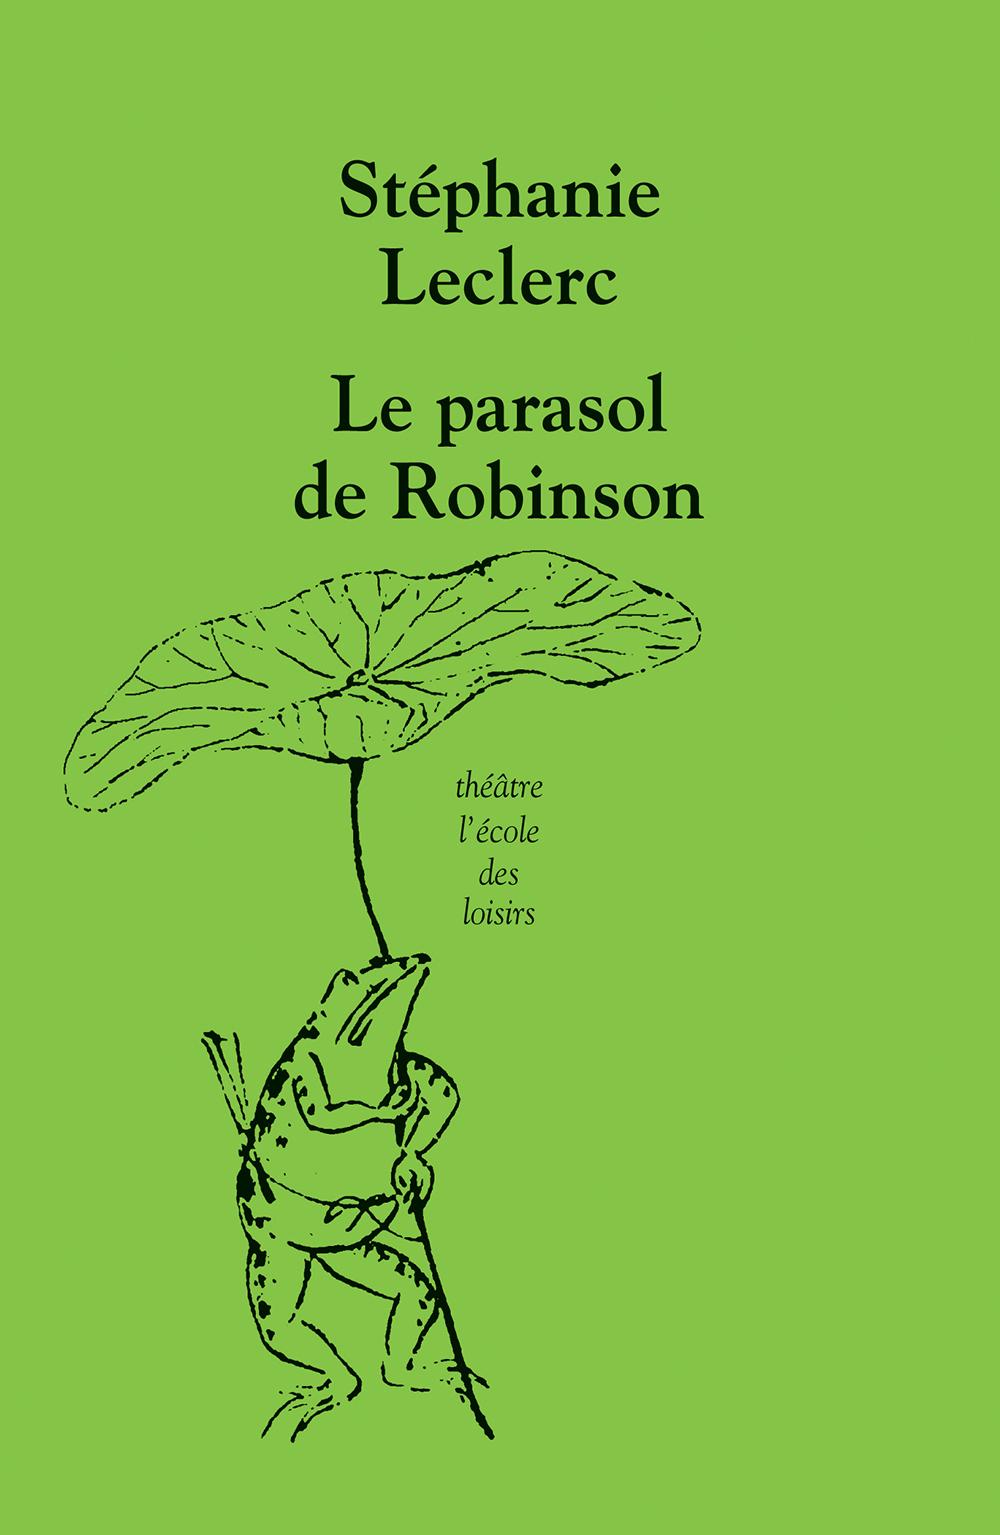 Le parasol de Robinson, de Stéphanie Leclerc. [L'école des loisirs - Collection Théâtre]